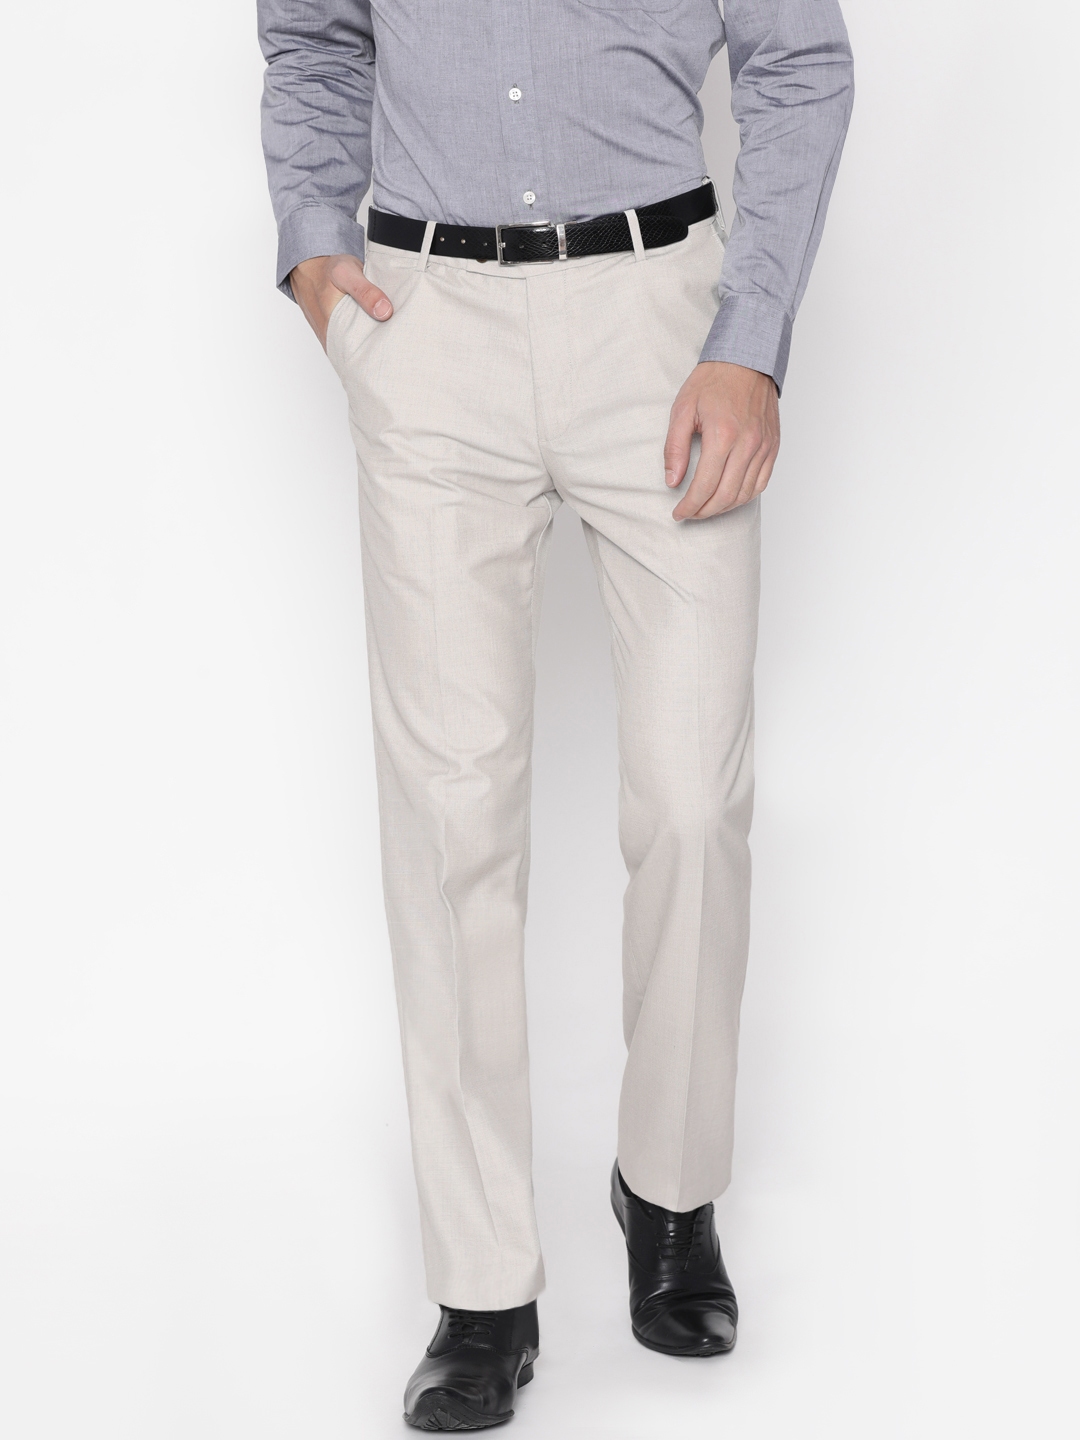 ARROW Regular Fit Men Beige Trousers  Buy ARROW Regular Fit Men Beige  Trousers Online at Best Prices in India  Flipkartcom